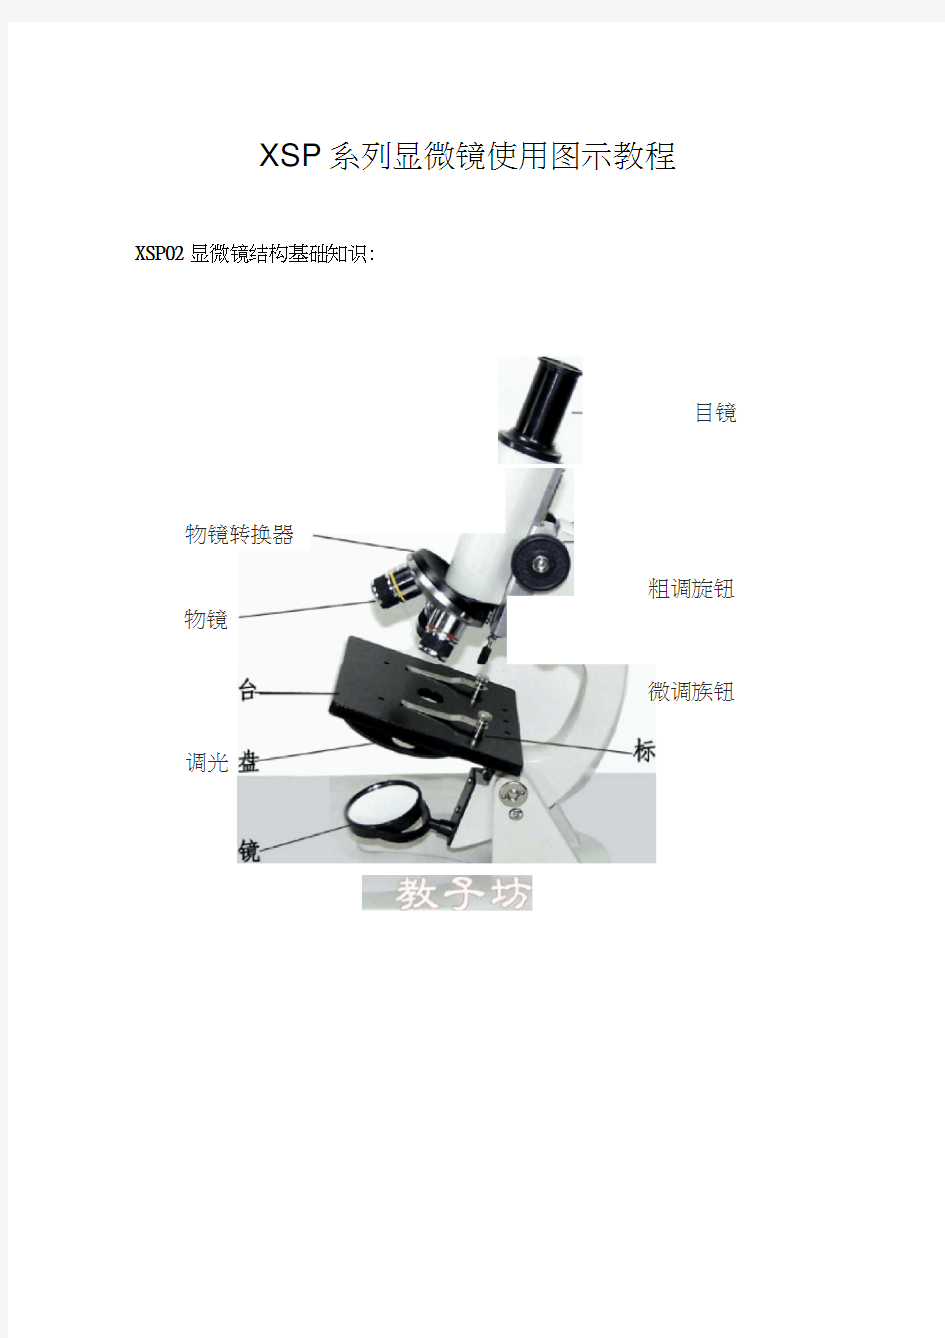 XSP显微镜使用图示教程(20210203101516)